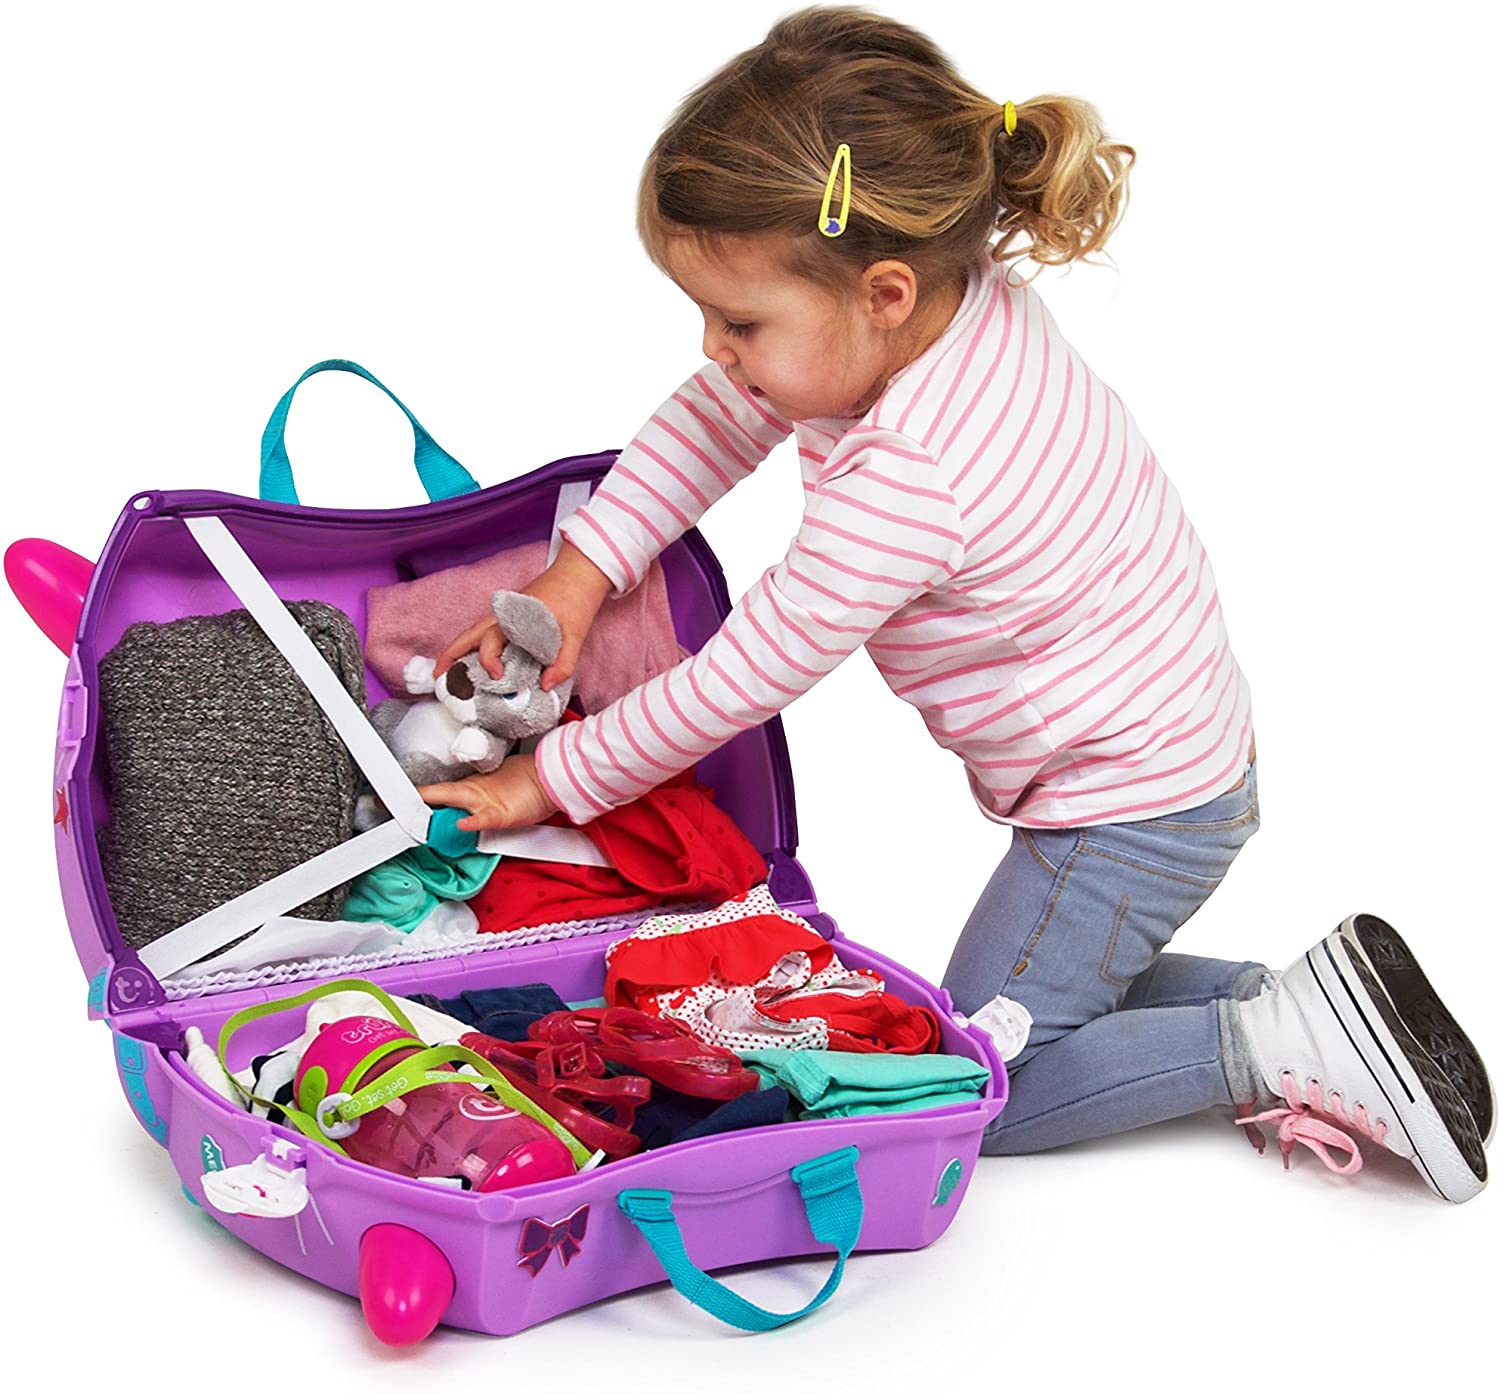 Подарок ребенку работ. Trunki чемодан сиреневый. Чемодан Trunki розовый. Trunki чемодан на колесиках котенок Кэйзи. Чемодан Trunki детский фиолетовый.